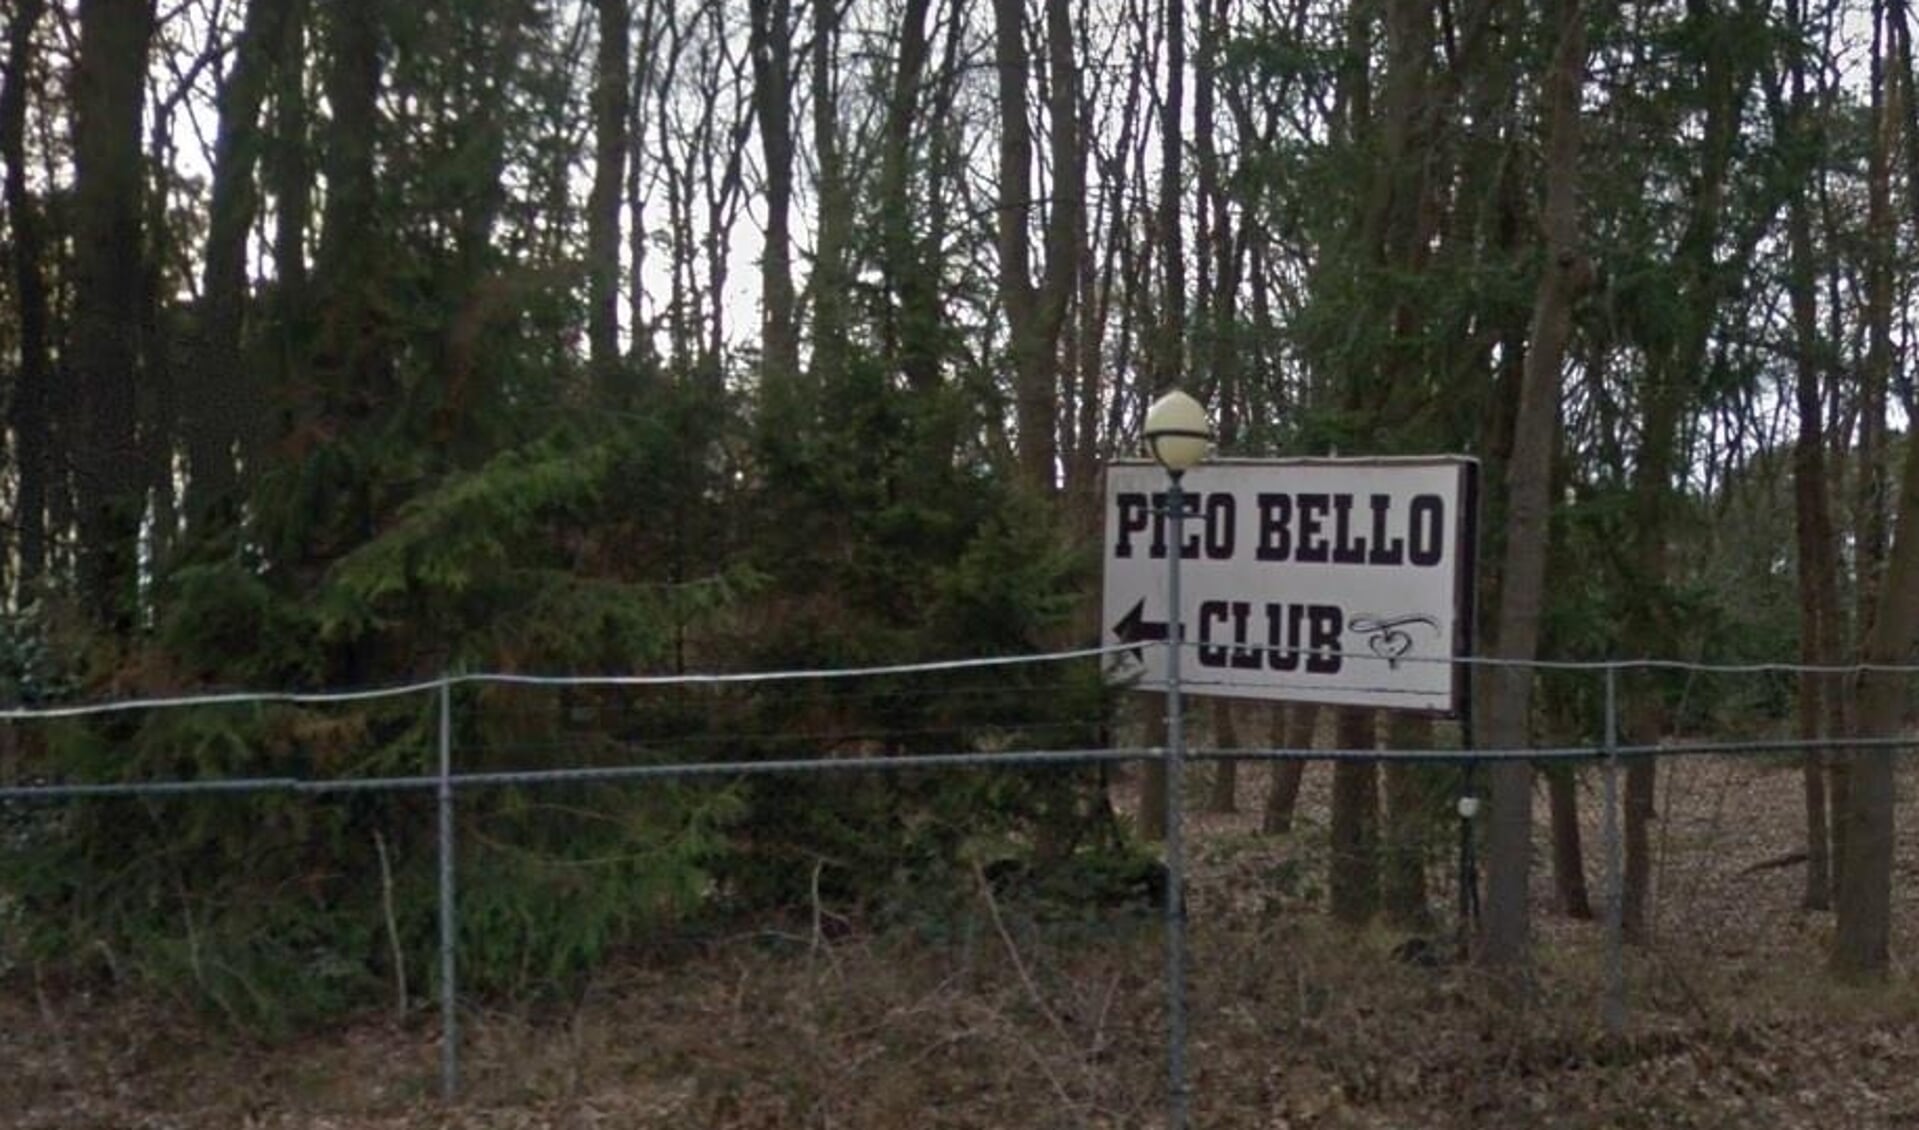 Pico Bello club Well